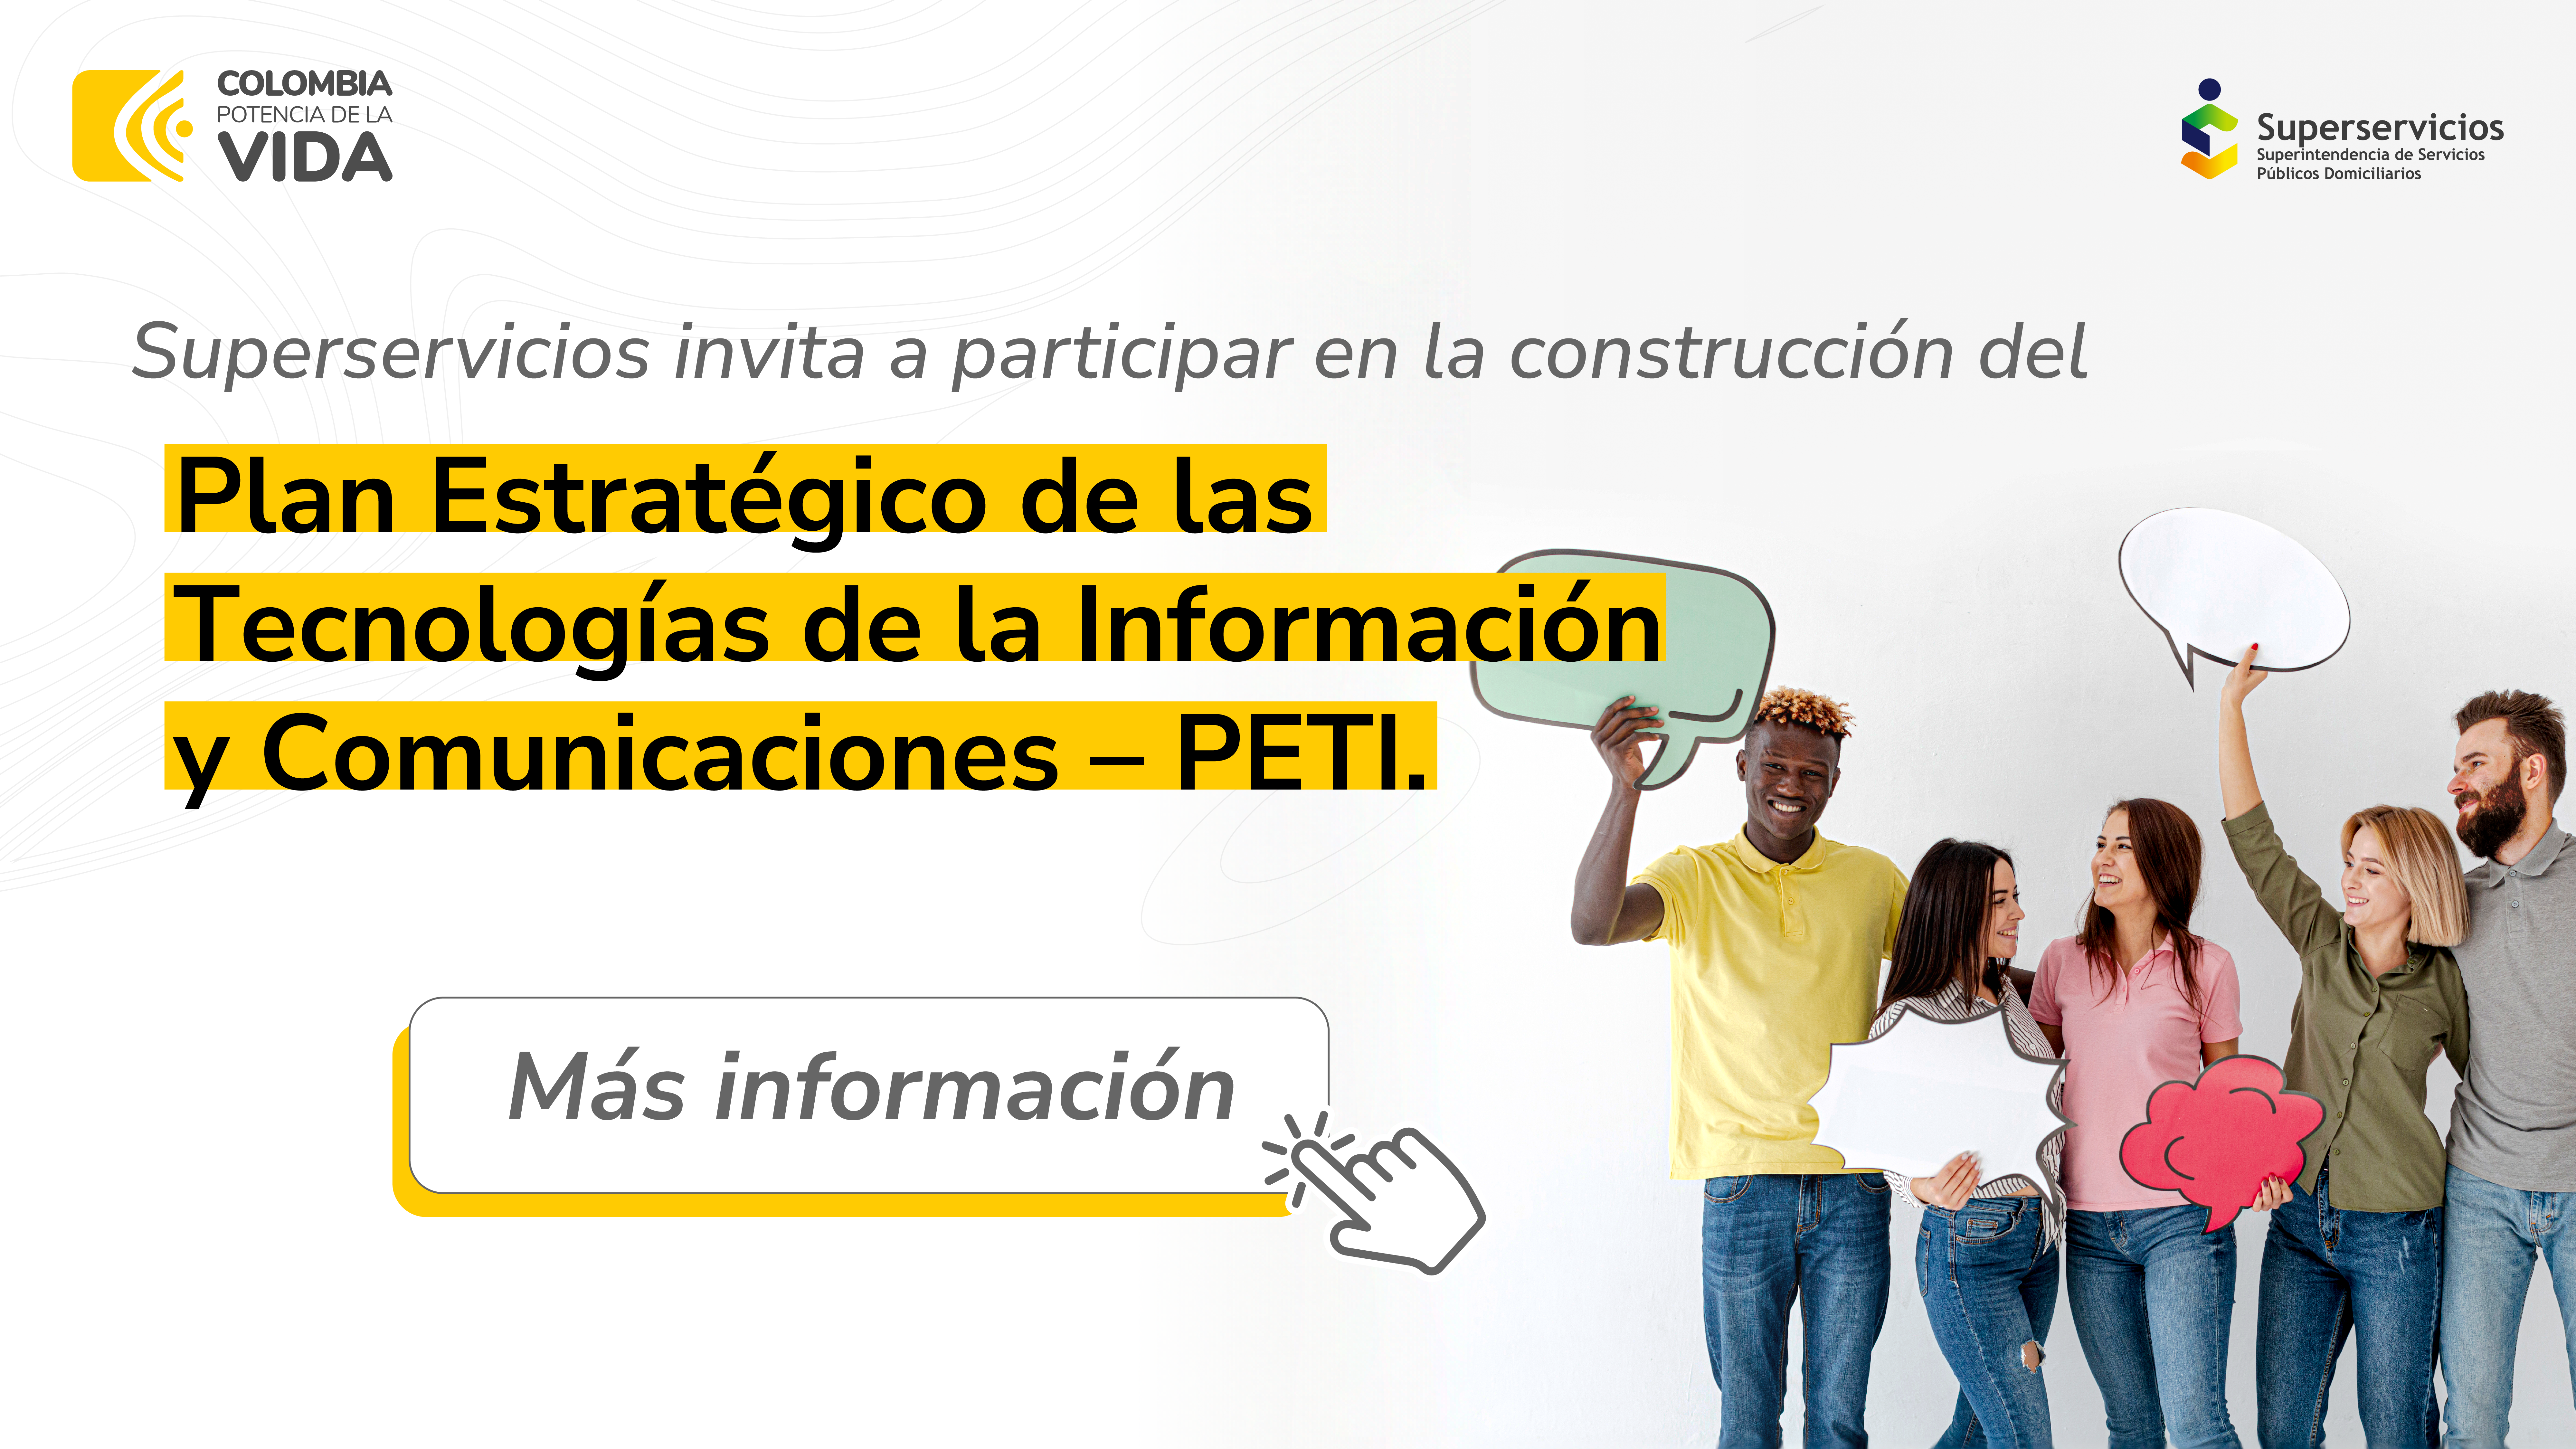 Superservicios invita a participar en la construcción del  Plan Estratégico de las Tecnologías de la Información y Comunicaciones – PETI.
